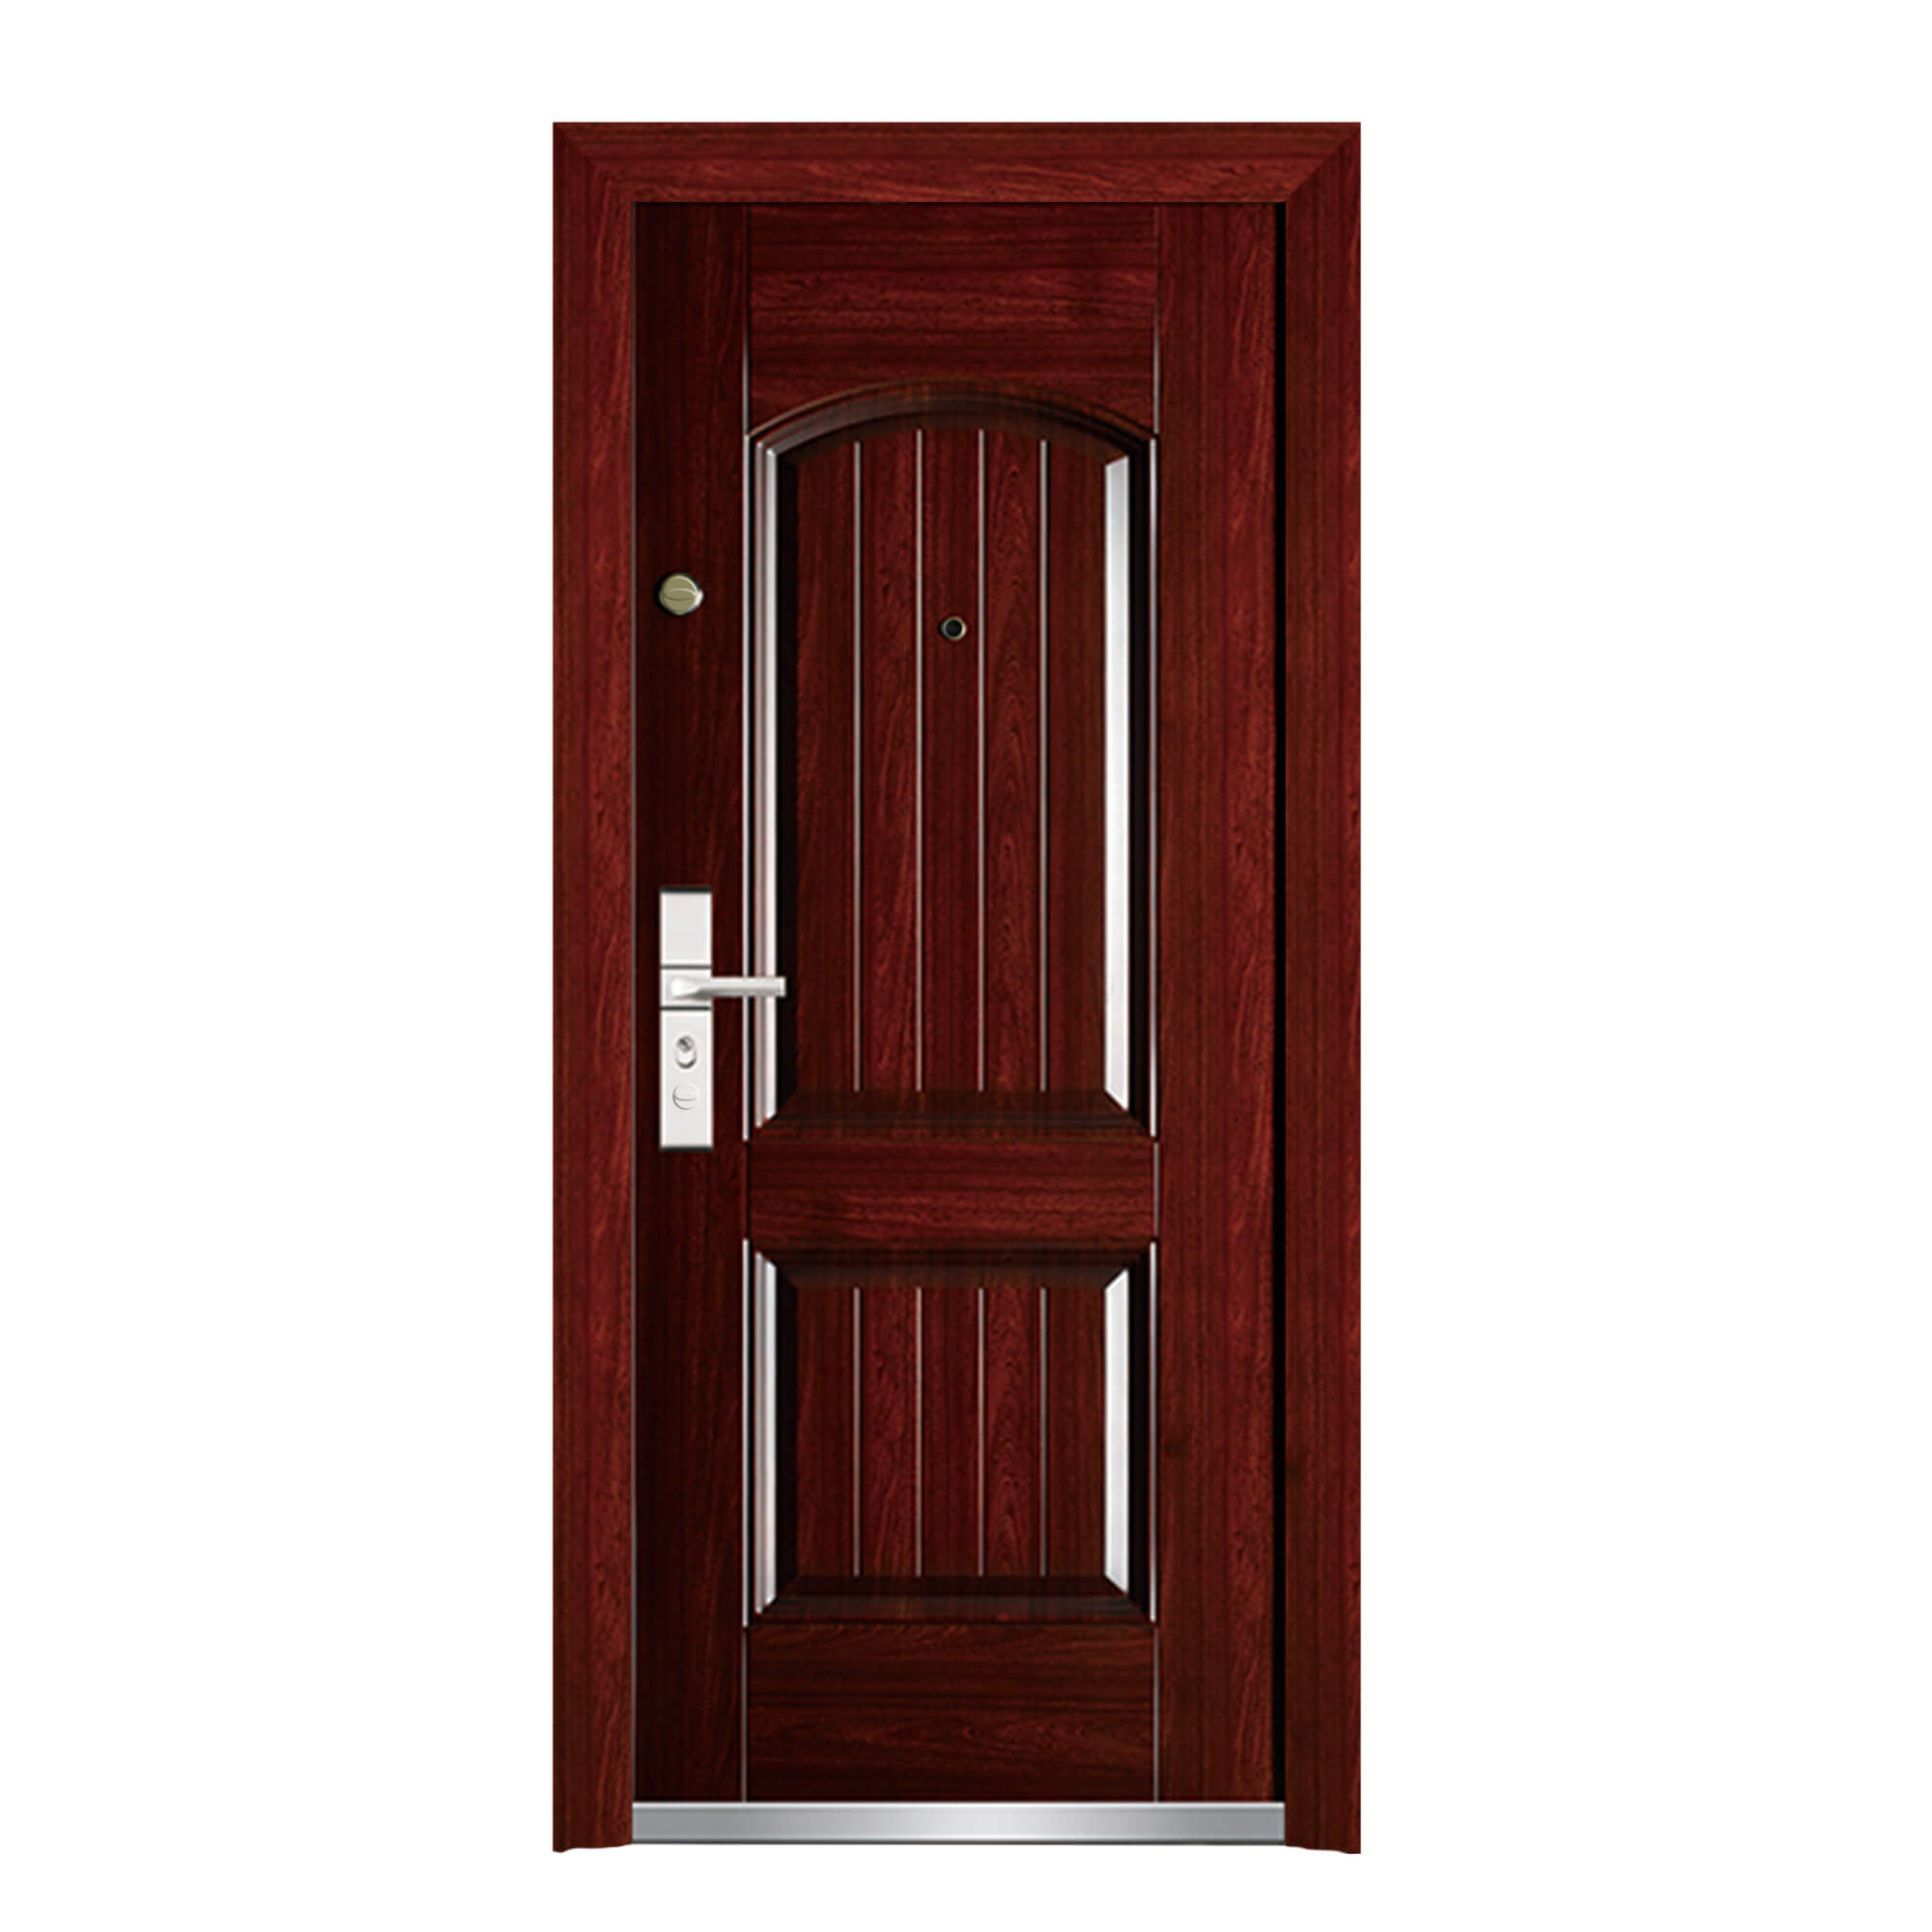 Exterior Steel Security Exterior Door for Home